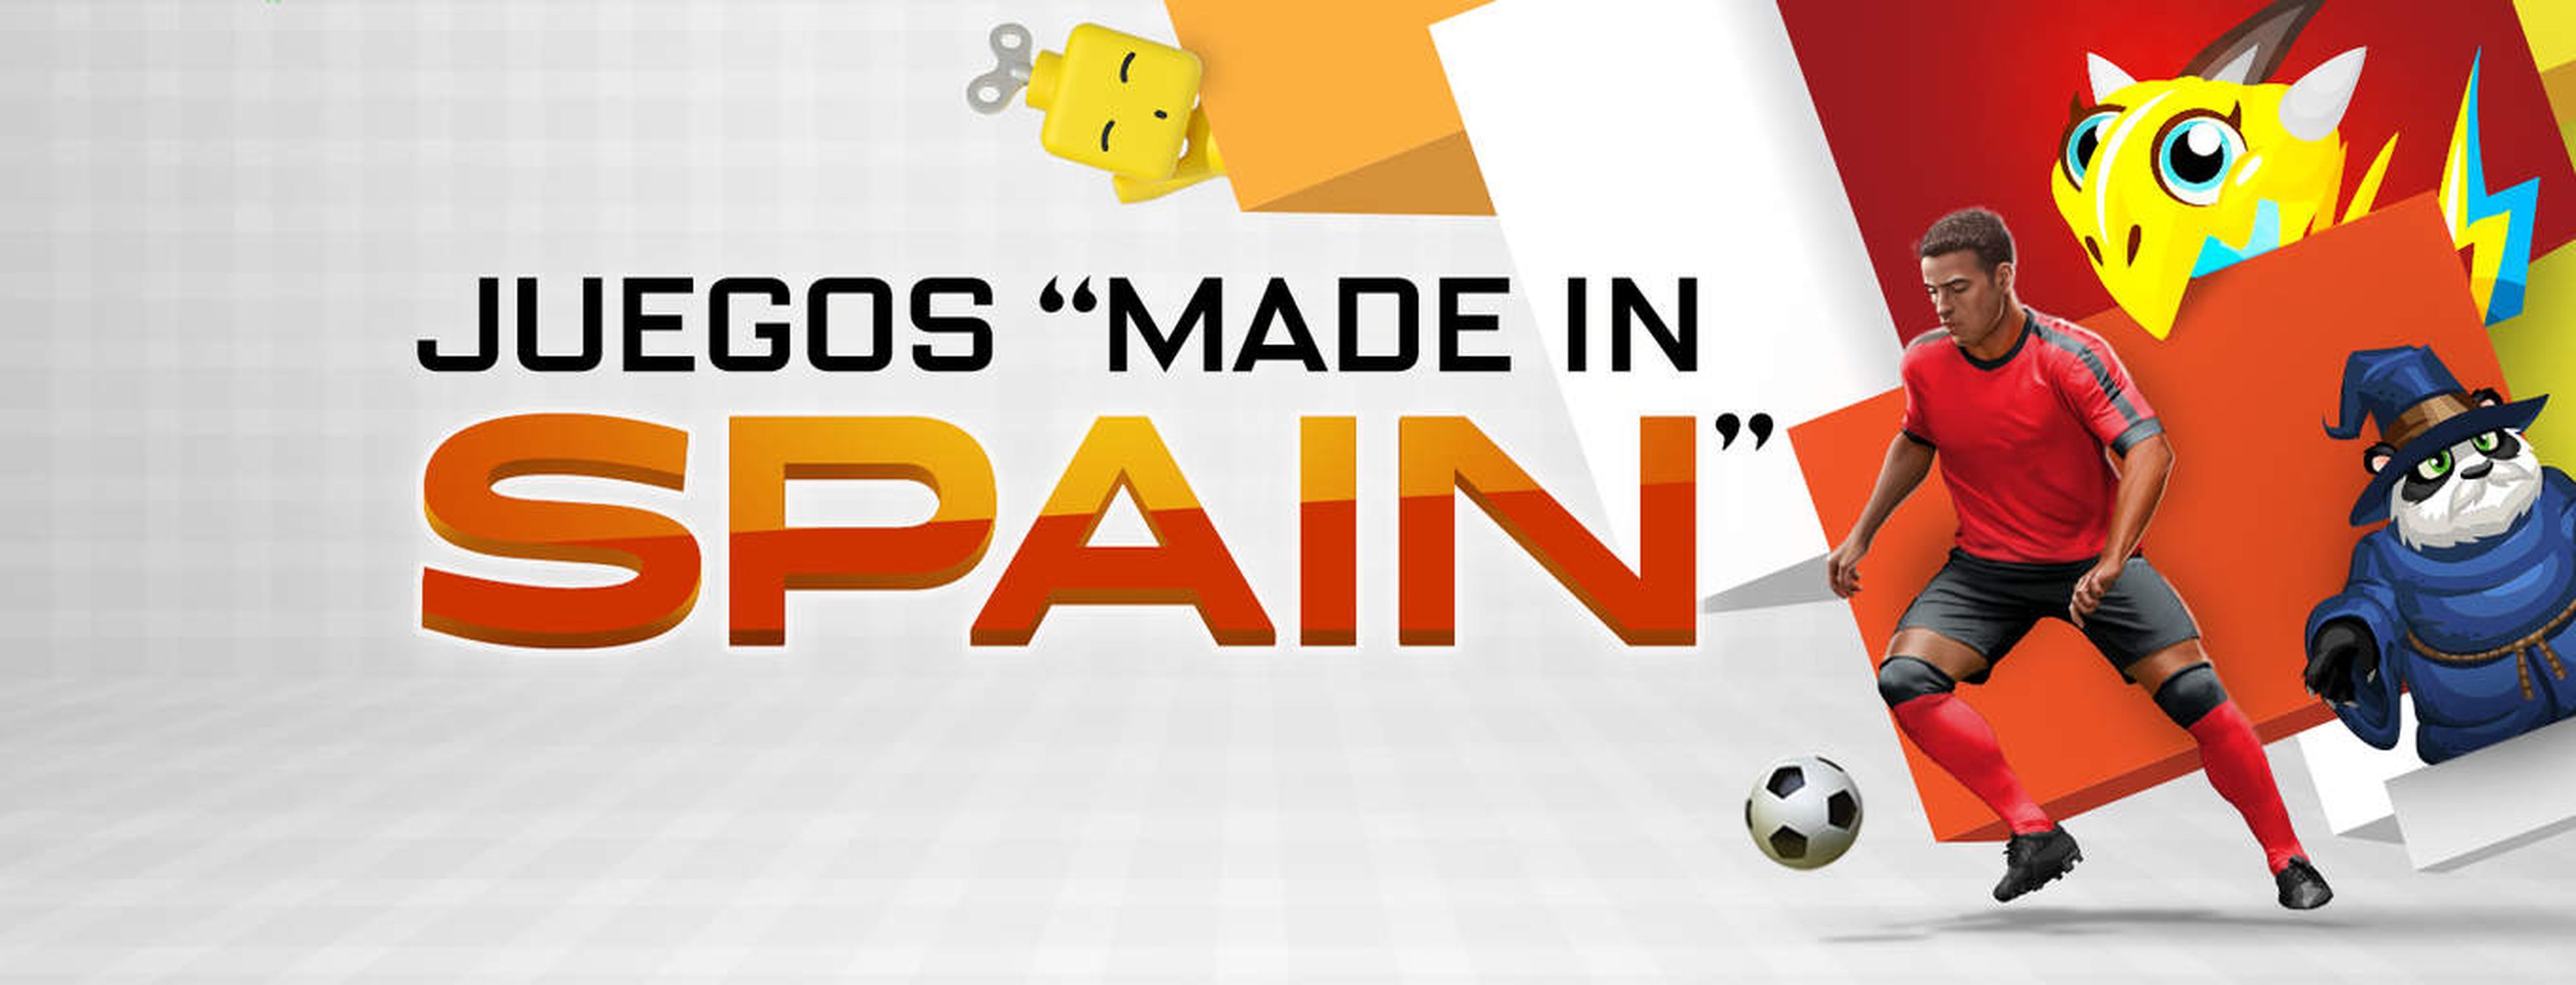 Juegos "Made in Spain", nuevo espacio en la App Store